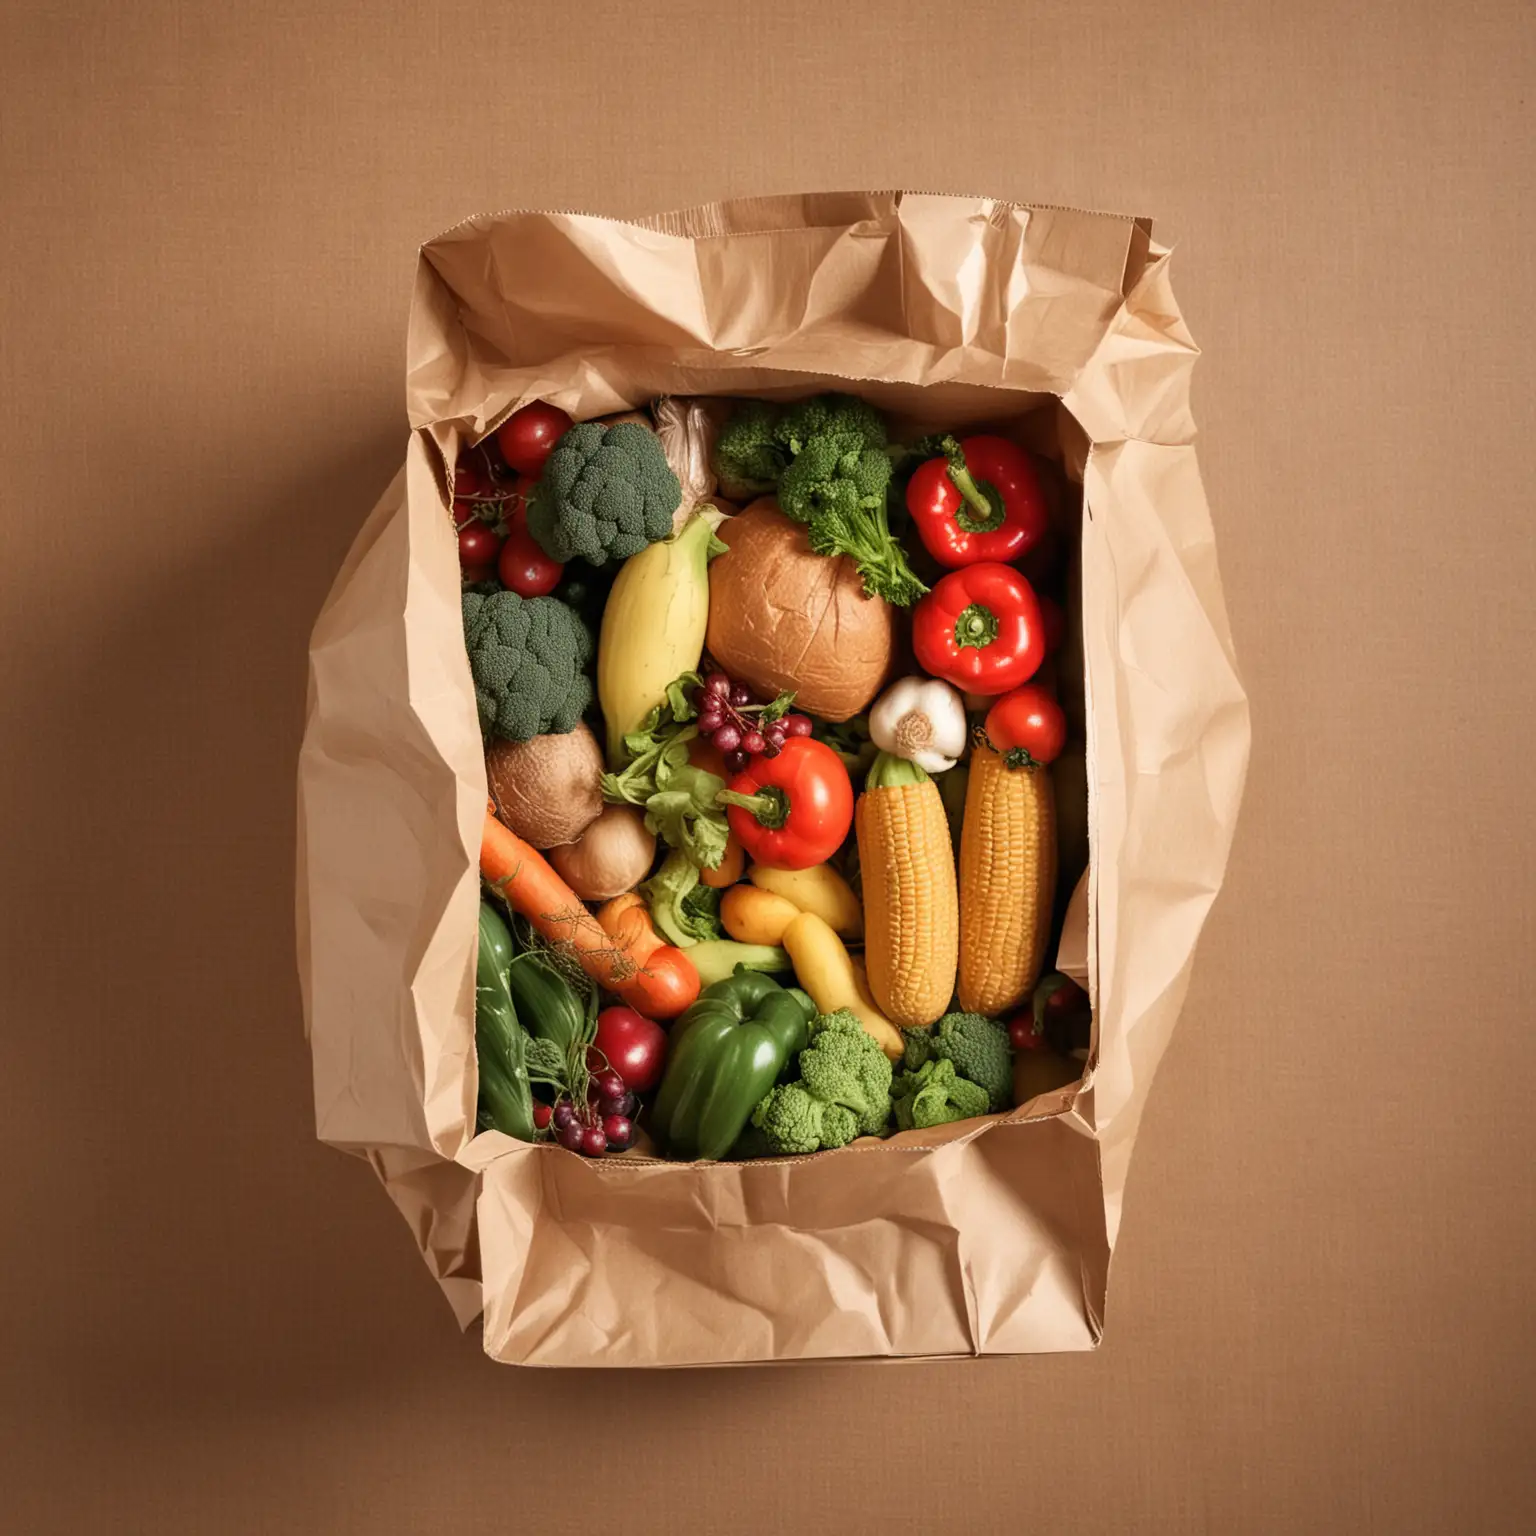 Full paper bag of groceries. Top view